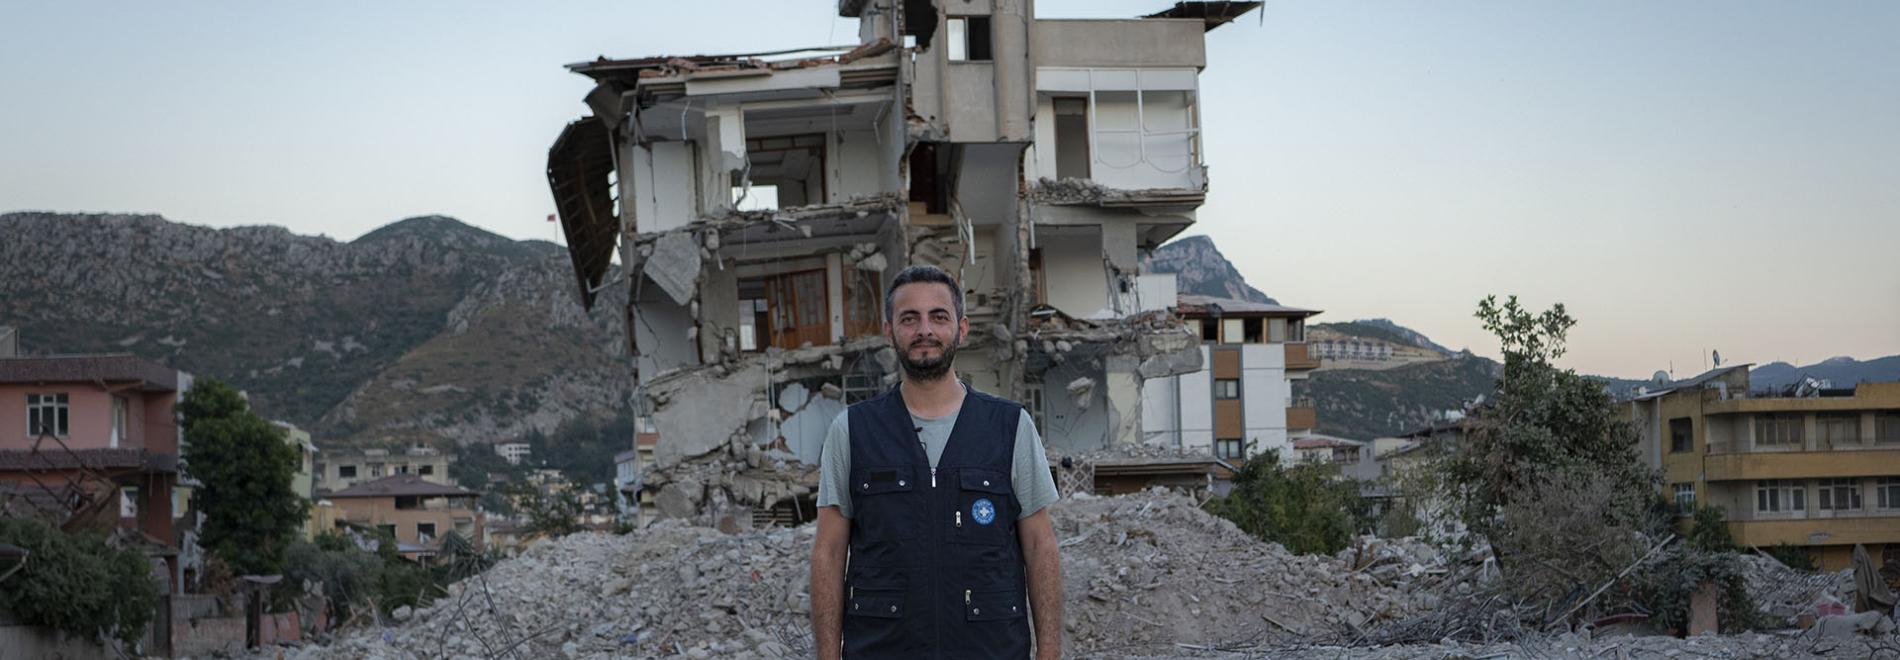 Ein Mitglied des Teams von Ärzte der Welt steht vor einem Gebäude, das bei dem Erdbeben in der Region Hatay in der Türkei zerstört wurde. Foto: Huseyin Aldemir